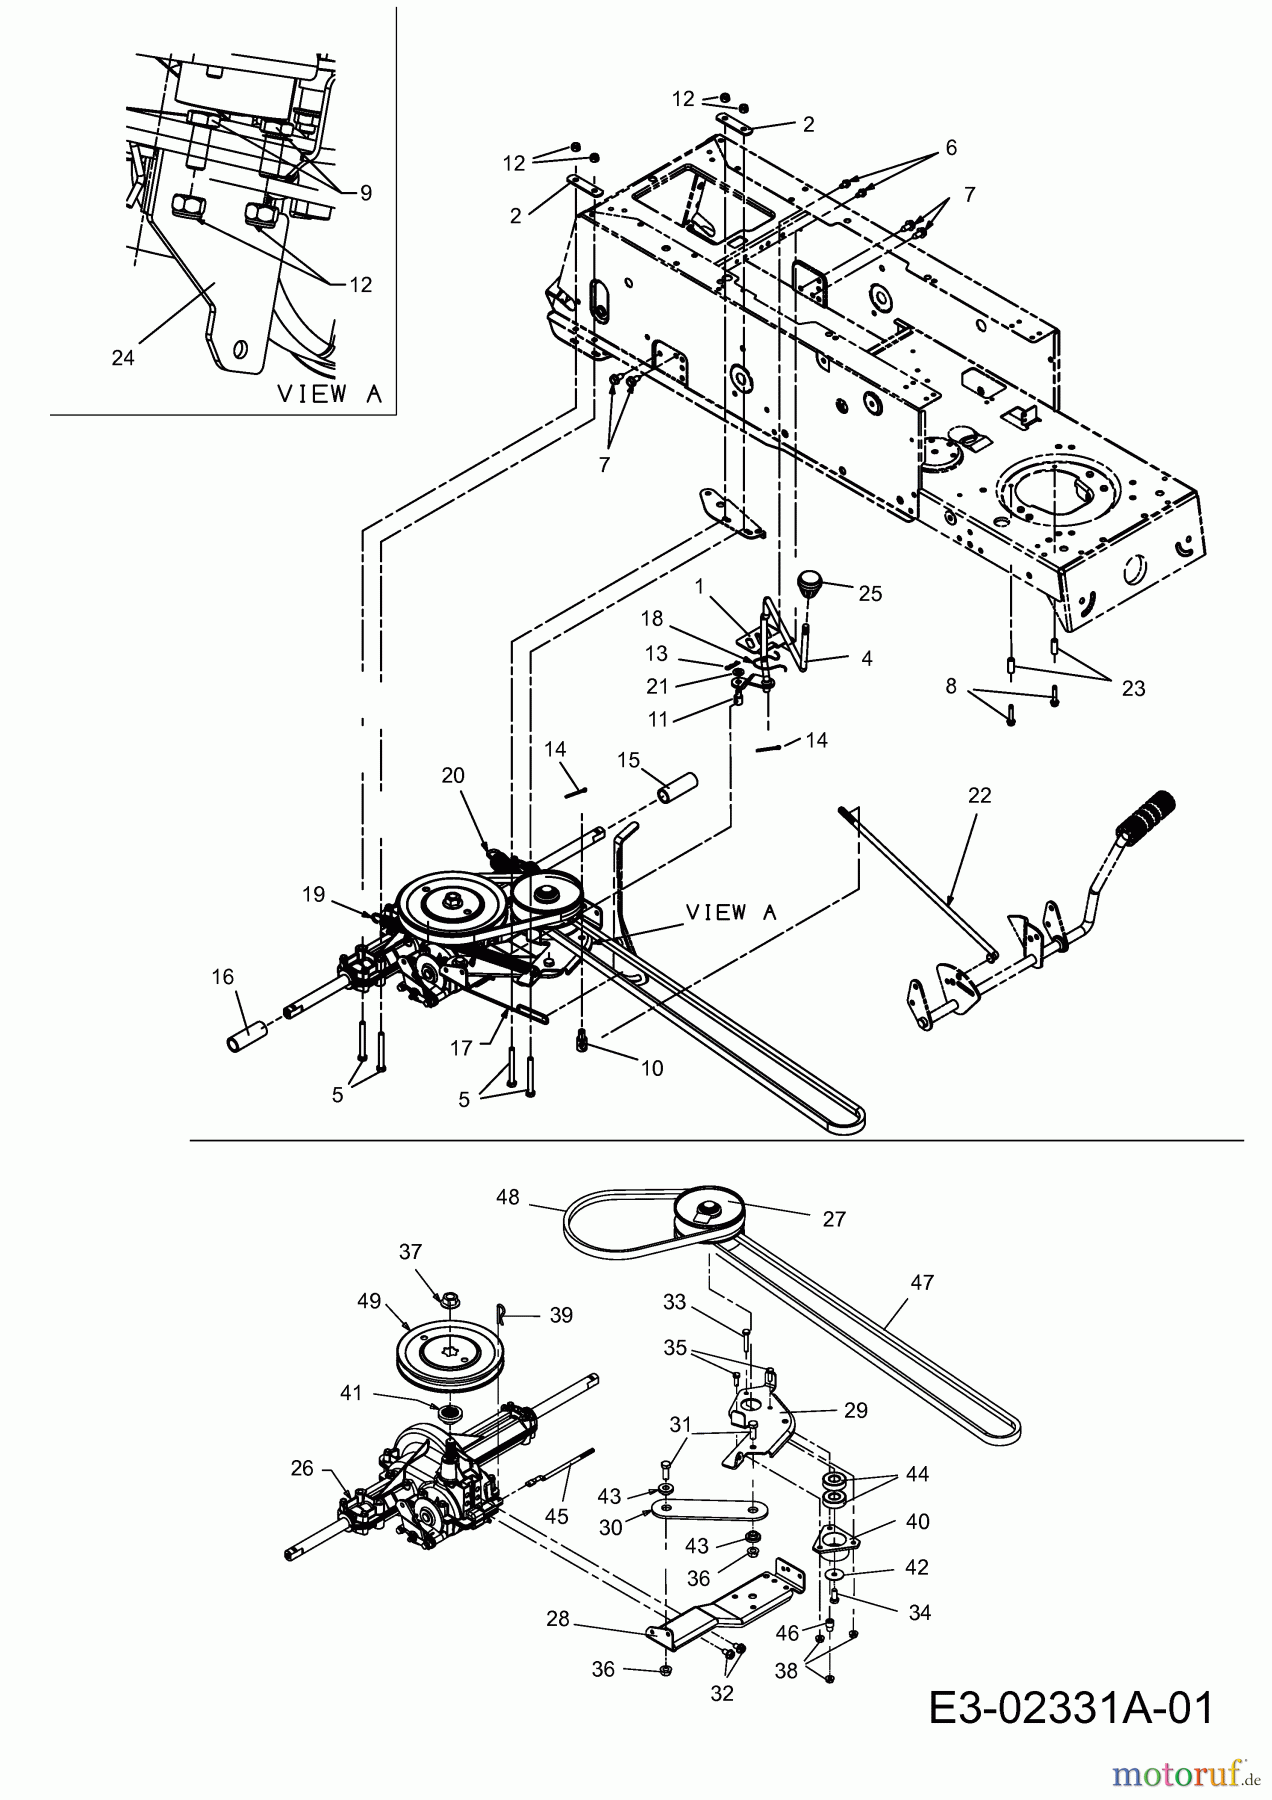  Motec Tracteurs de pelouse MT BS 300 13AC662F640  (2004) Entraînement de roulement